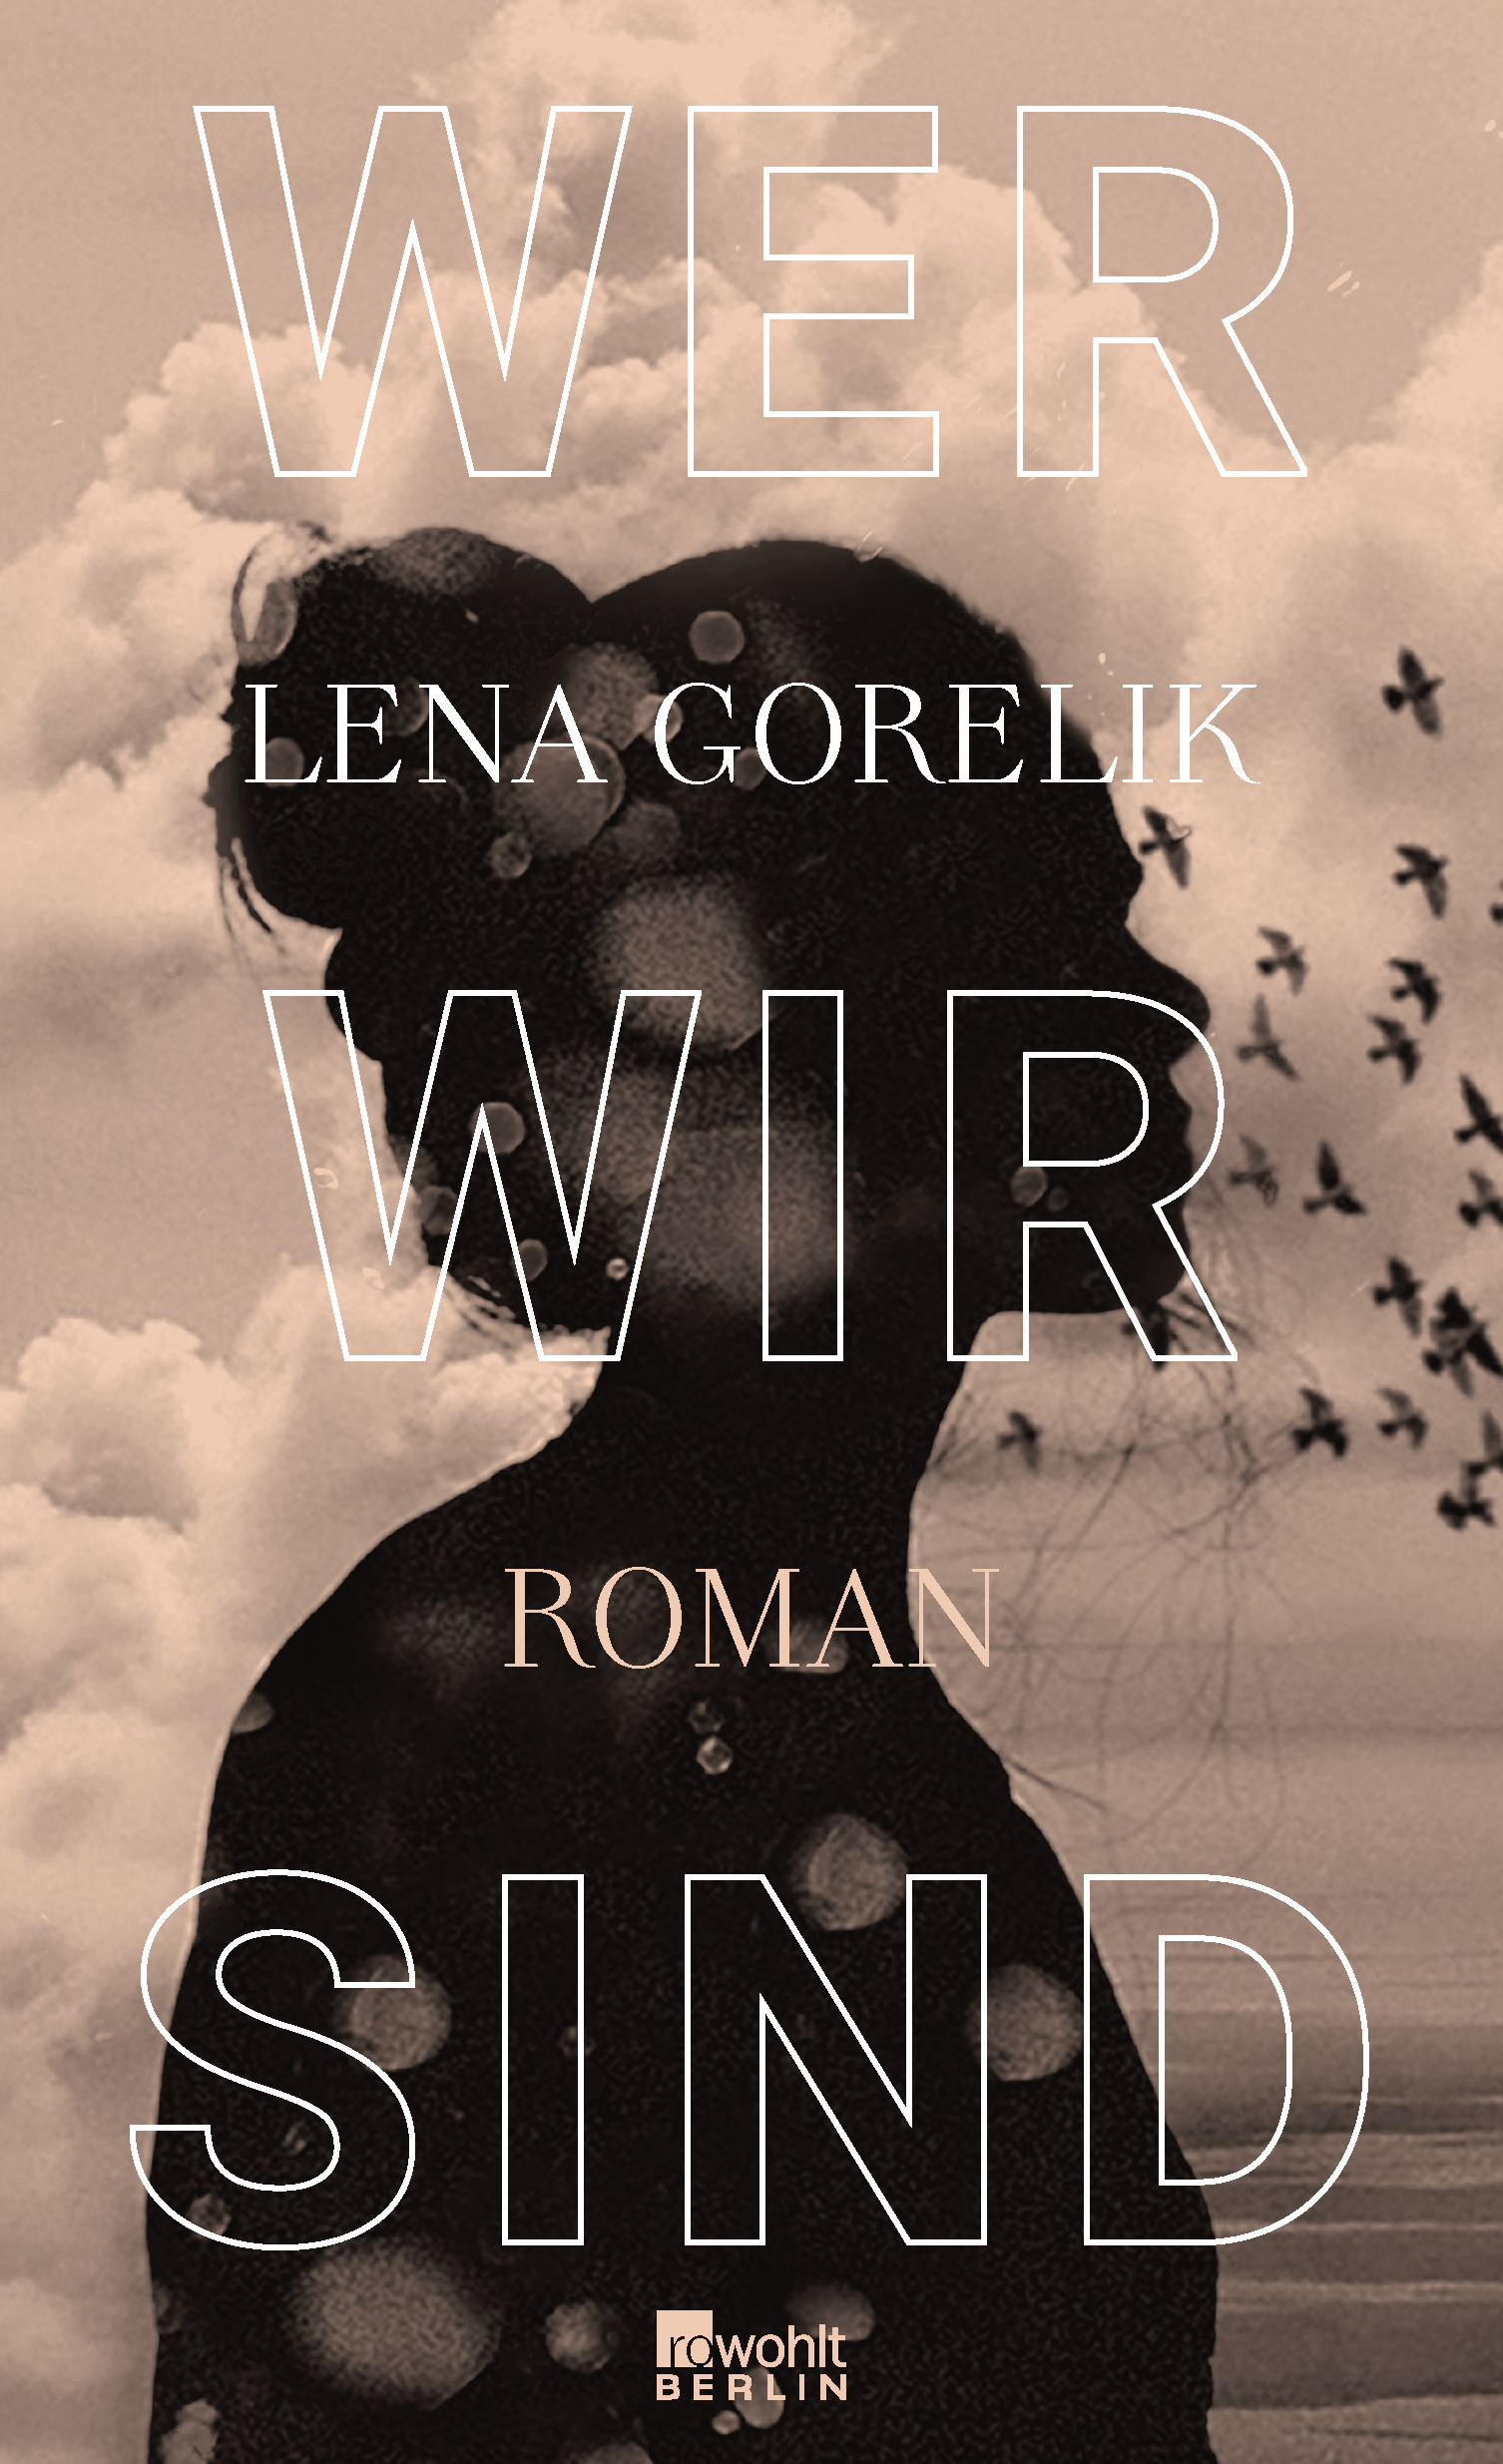 Couverture du roman de Lena Gorelik Wer wir sind. Une silhouette de femme (visage et buste) de profil se découpe sur un ciel nuageux dans les tons gris et roses, où volent un groupe d'oiseaux